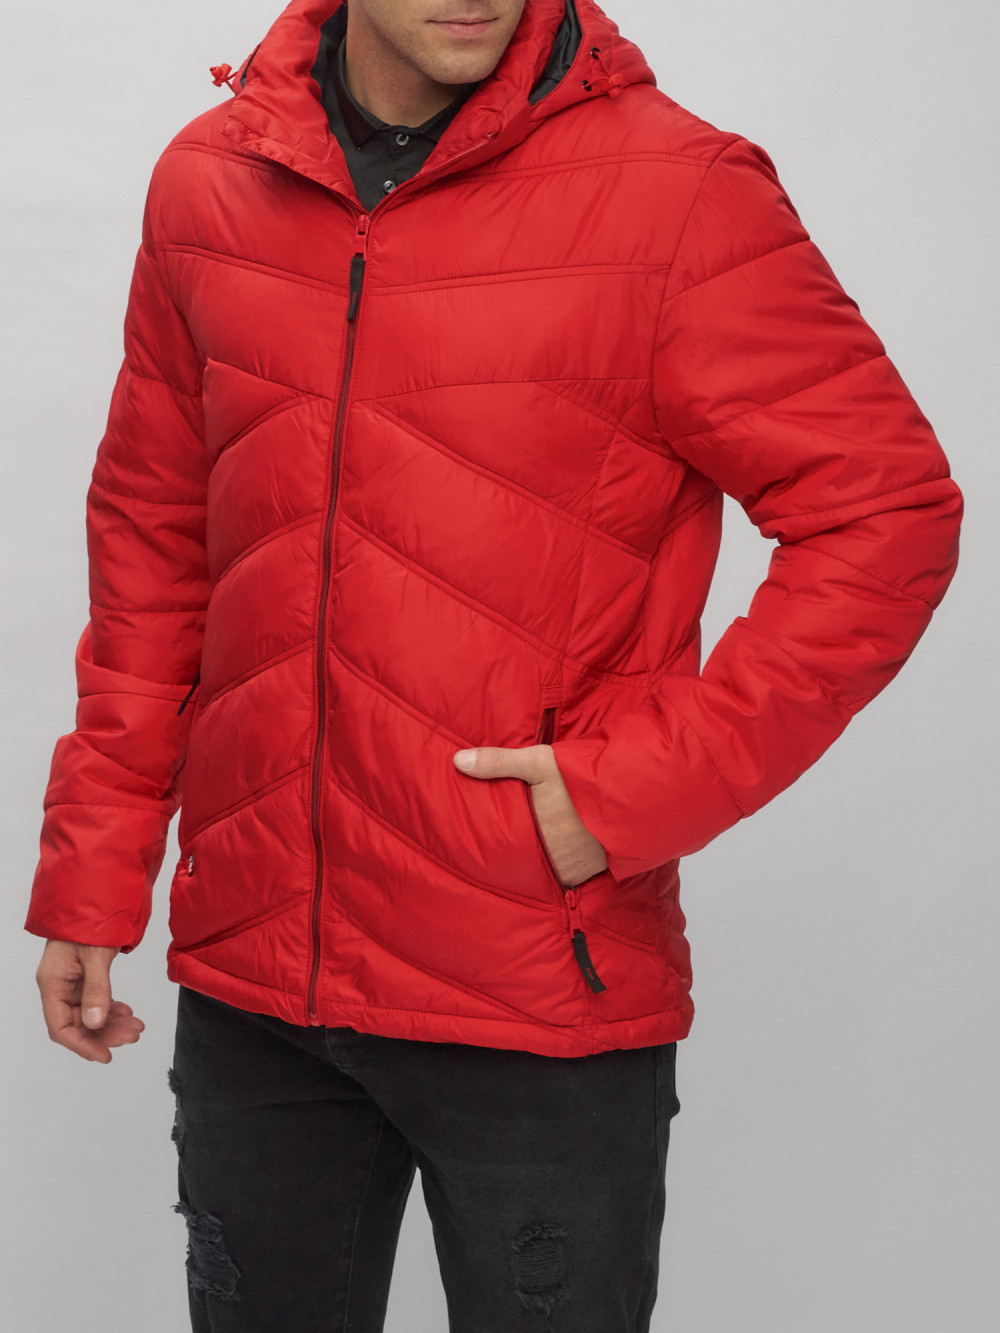 Купить куртку мужскую спортивную весеннюю оптом от производителя недорого в Москве 62176Kr 1